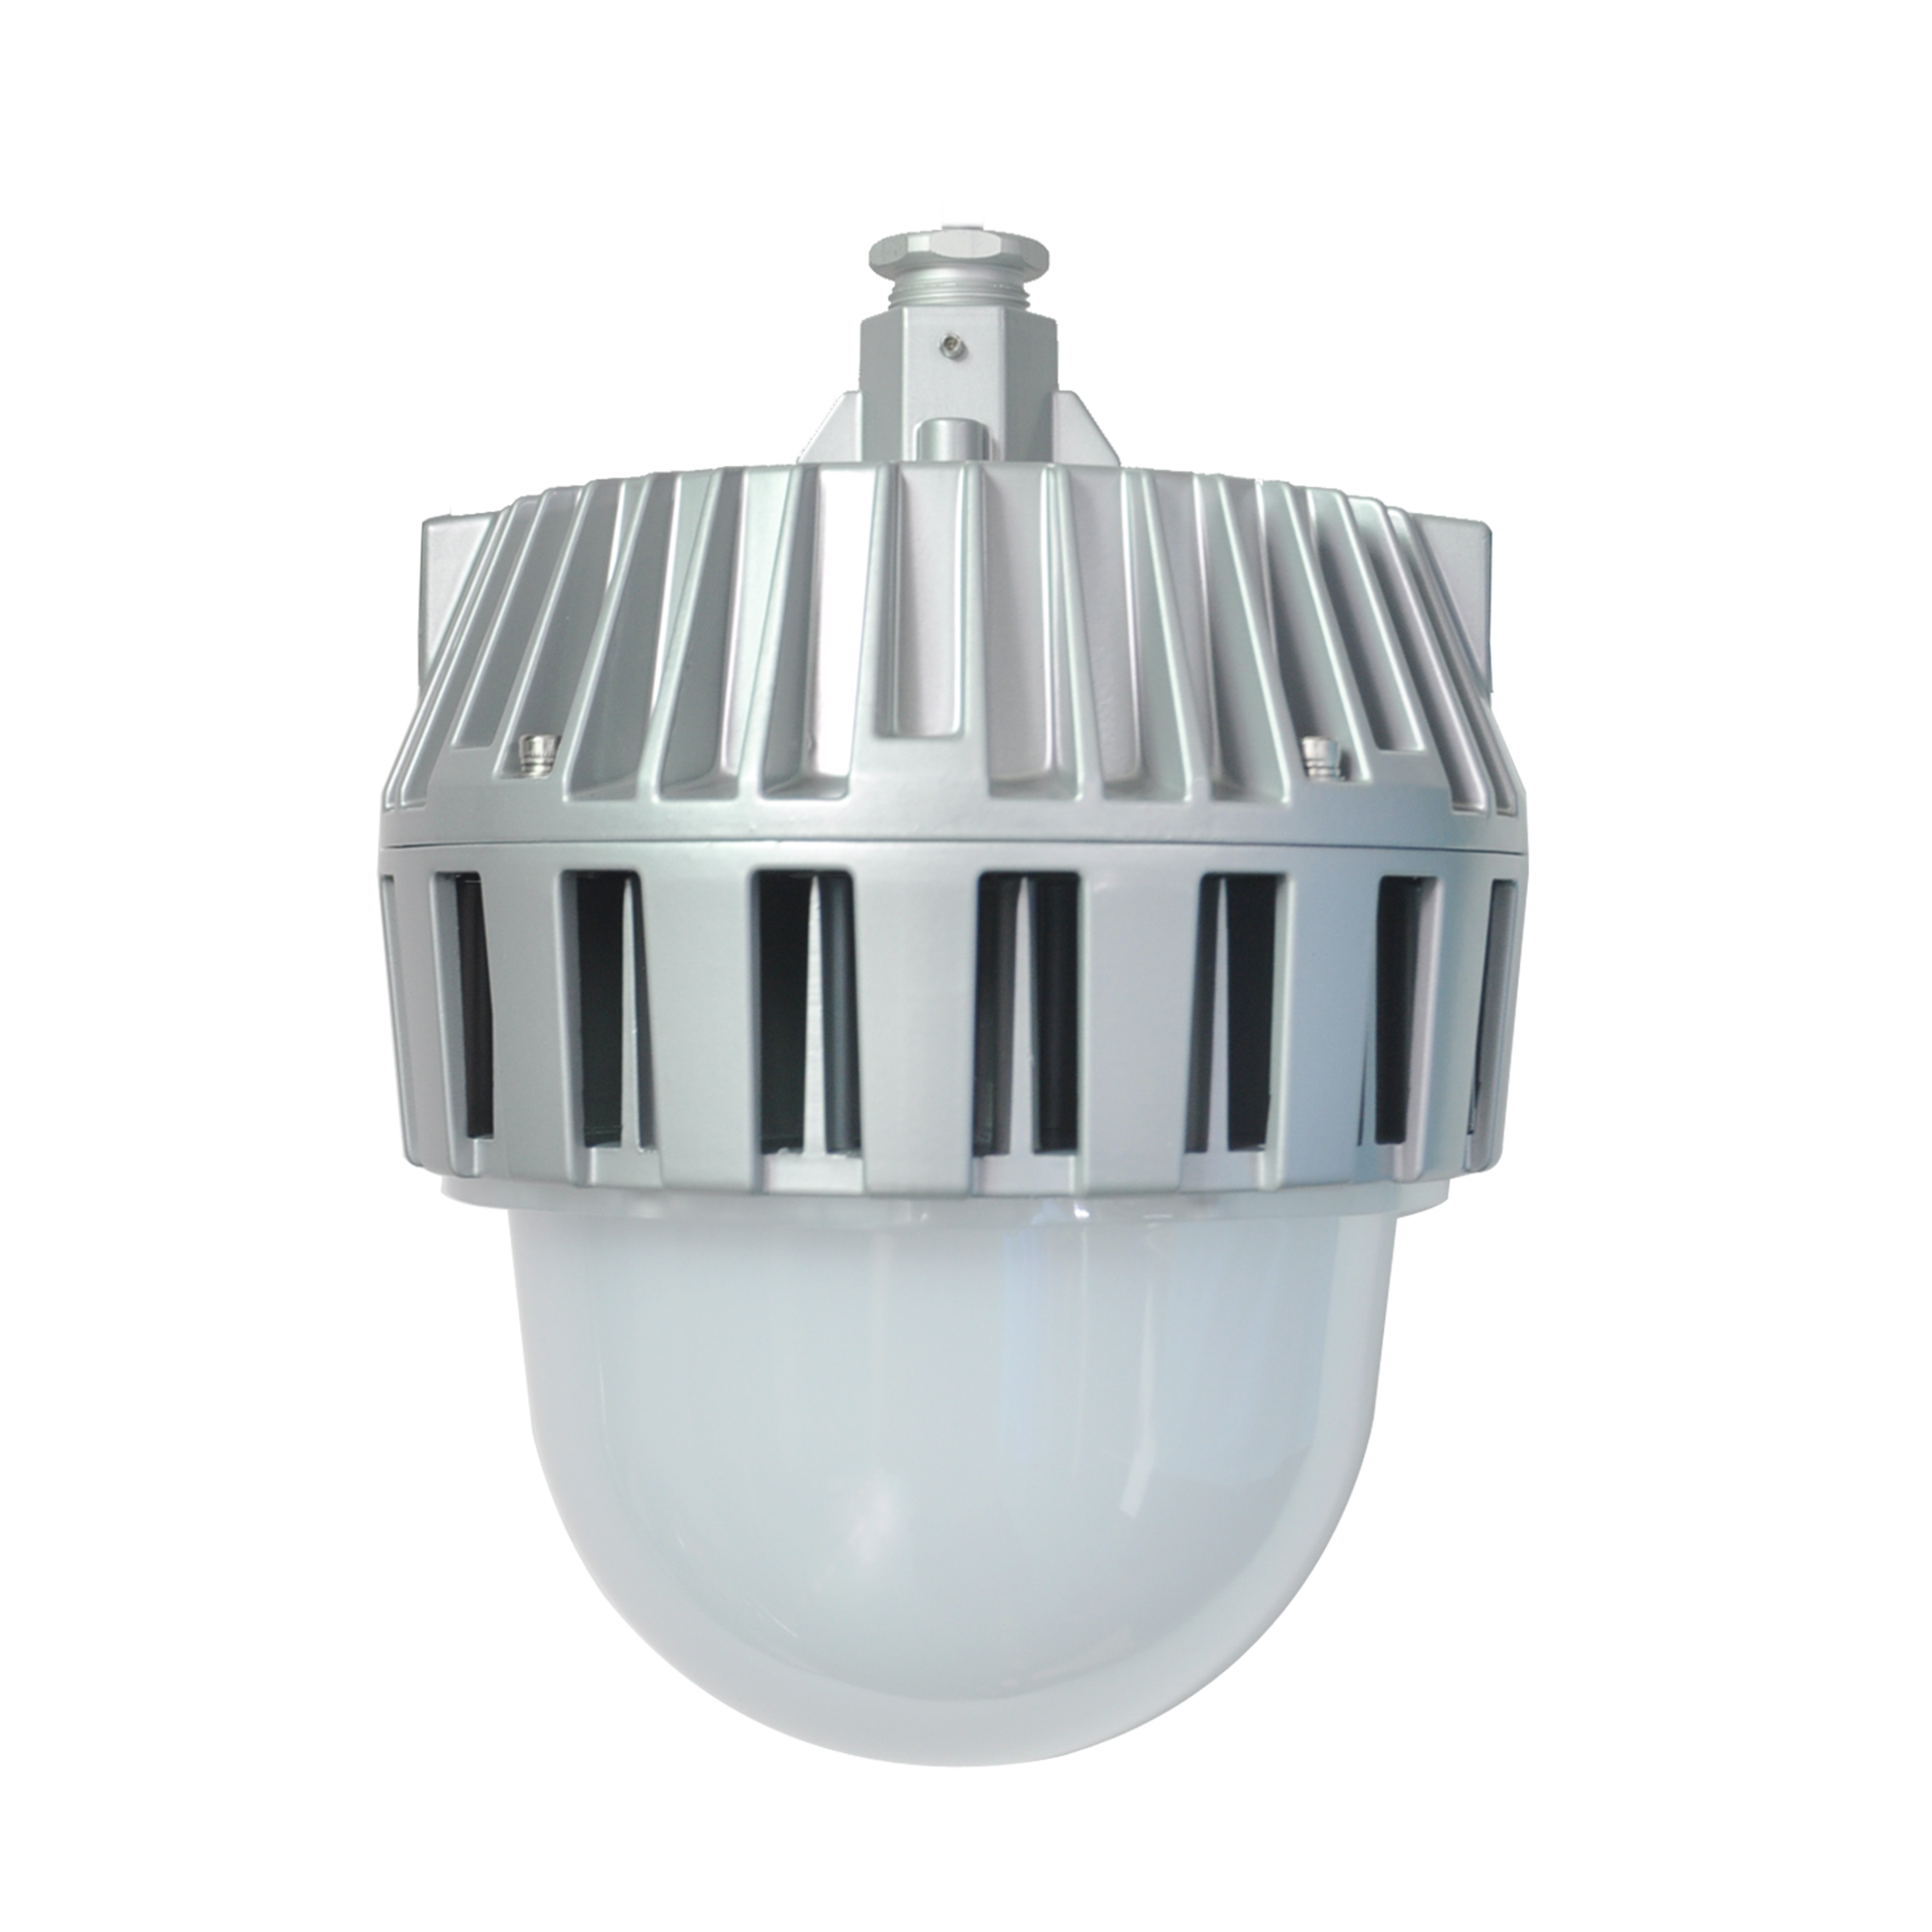  LED工業燈 KL2018-II 系列